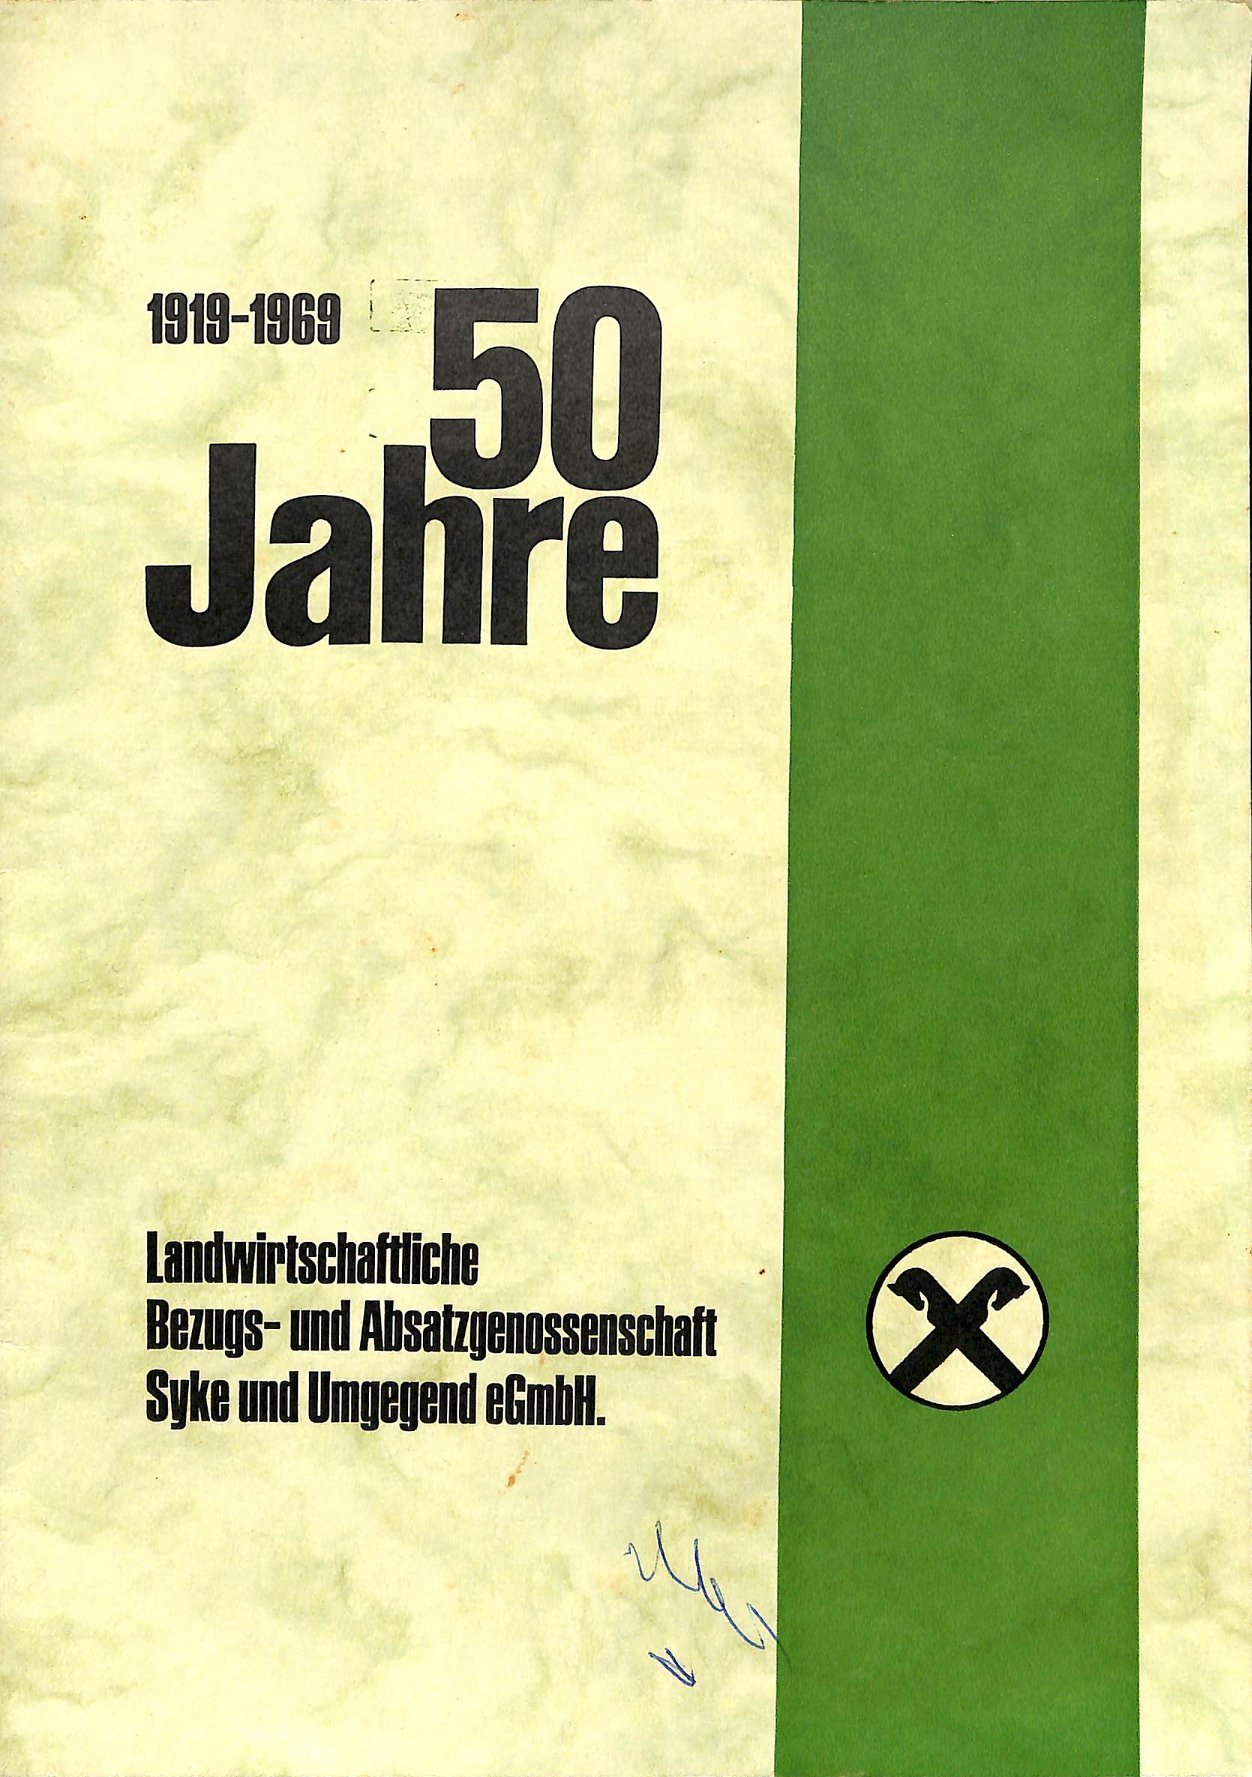 Jubiläumsschrift. 1919-1969. 50 Jahre Landwirtschaftliche Bezugs- und Absatzgenossenschaft Syke und Umgegend eGmbH. (Kreismuseum Syke CC BY-NC-SA)